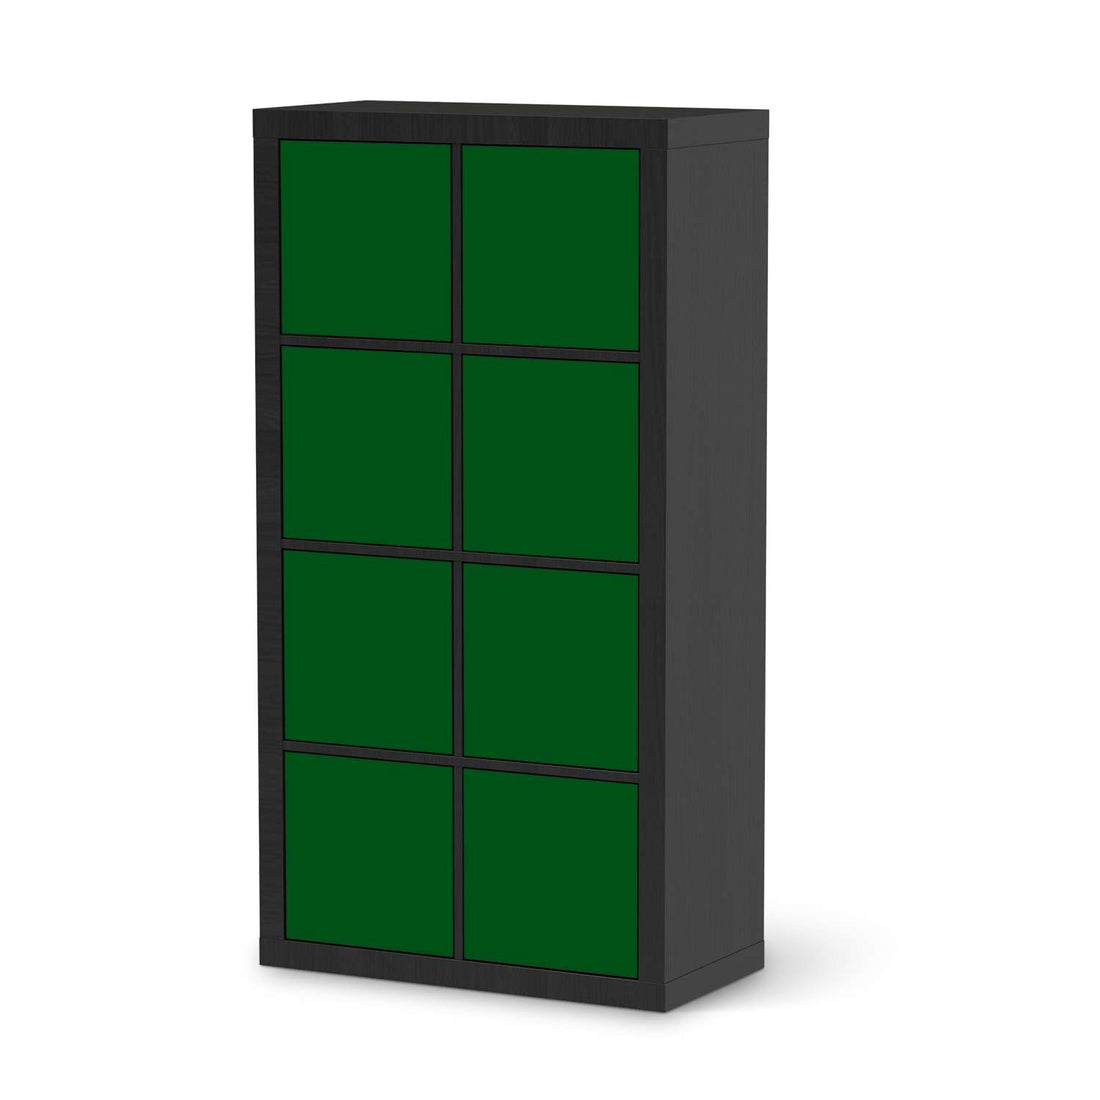 Folie für Möbel Grün Dark - IKEA Kallax Regal 8 Türen - schwarz